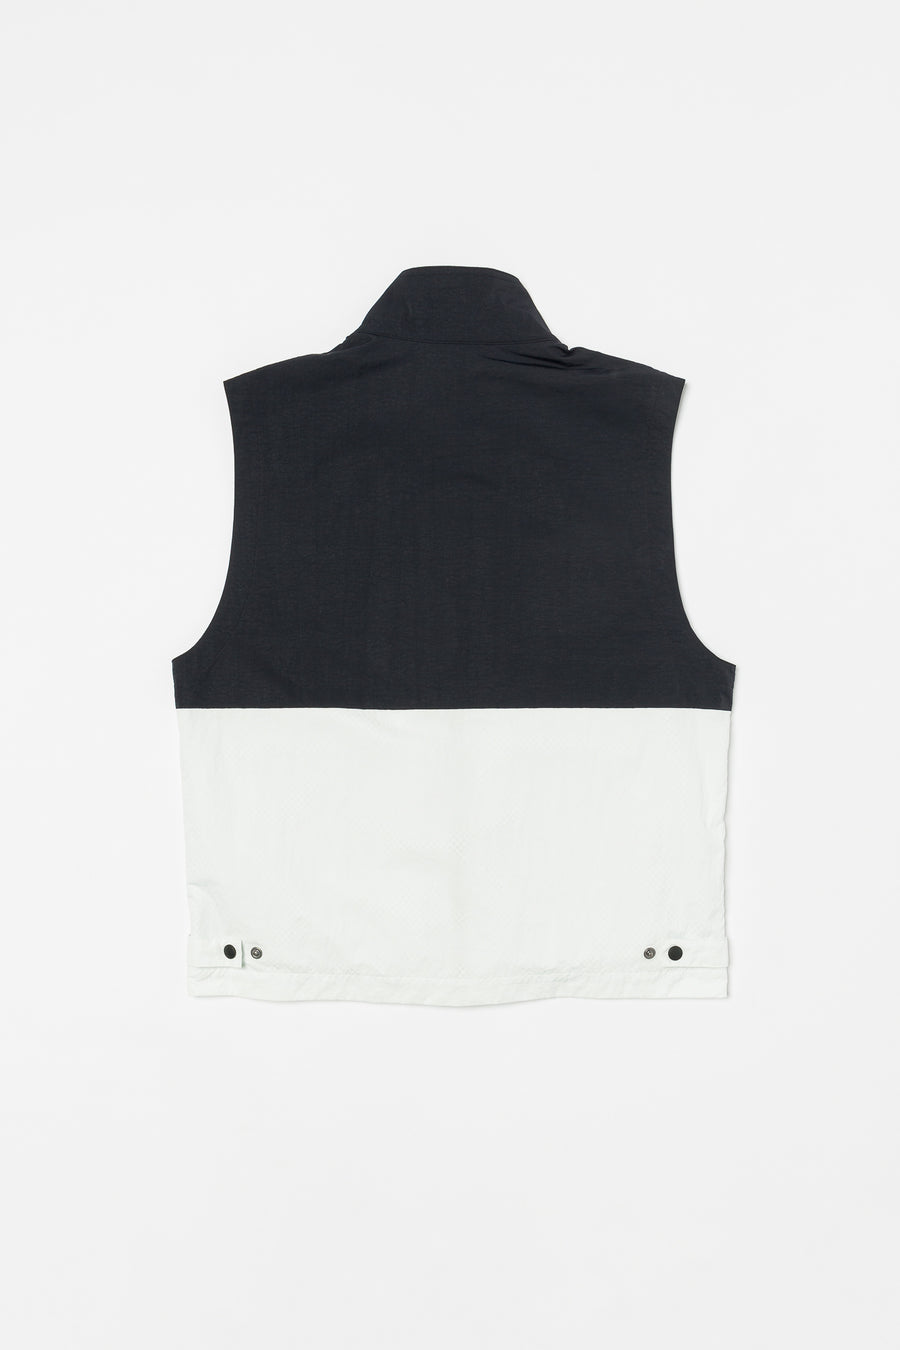 nike black and white vest